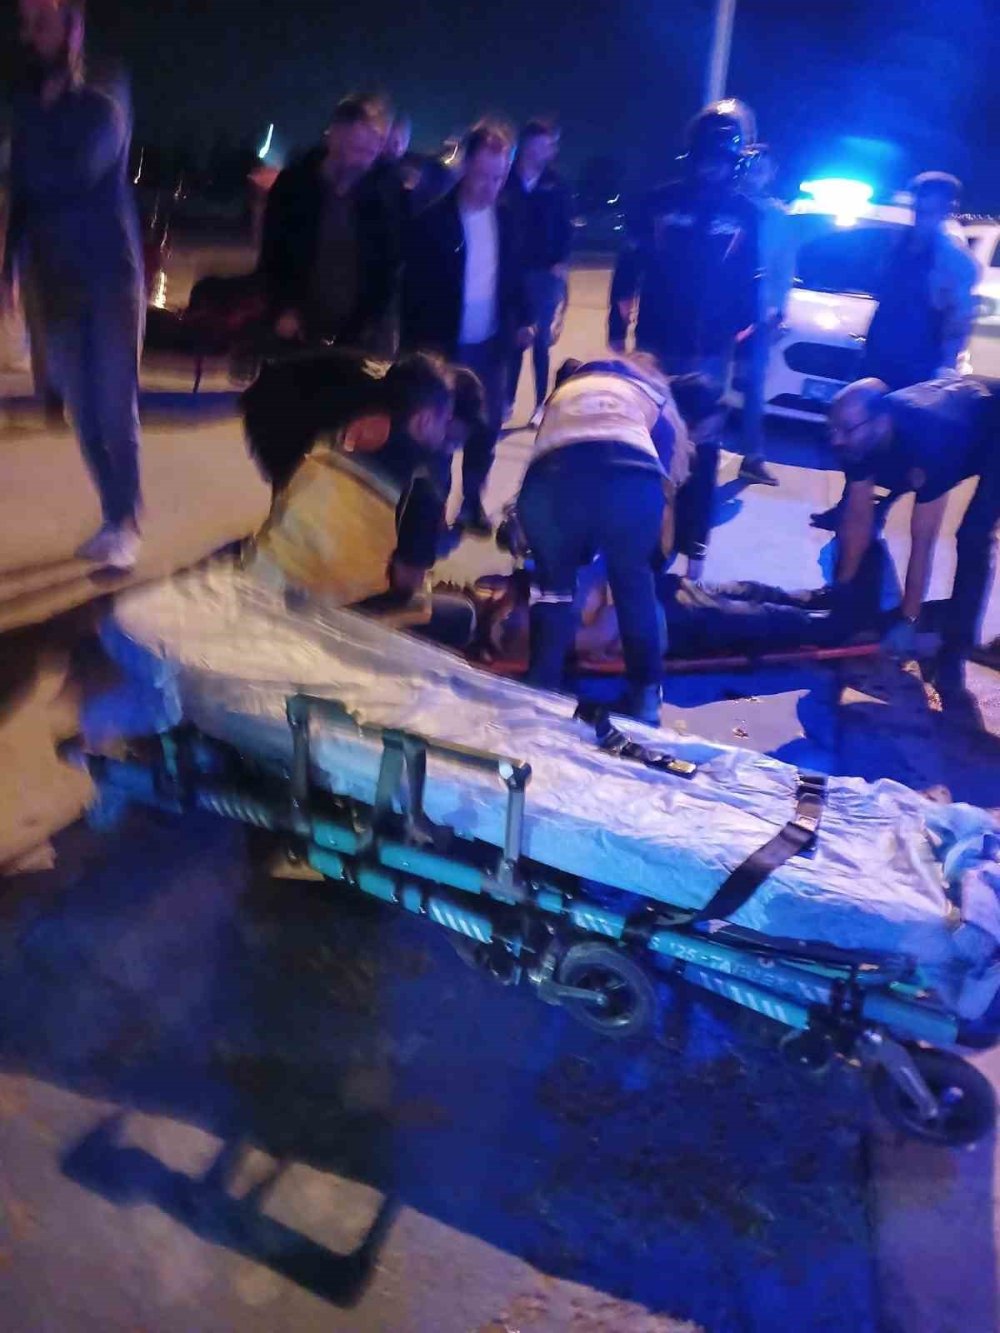 Konya’da trafik tartışması kanlı bitti: Bıçaklanarak öldürüldü